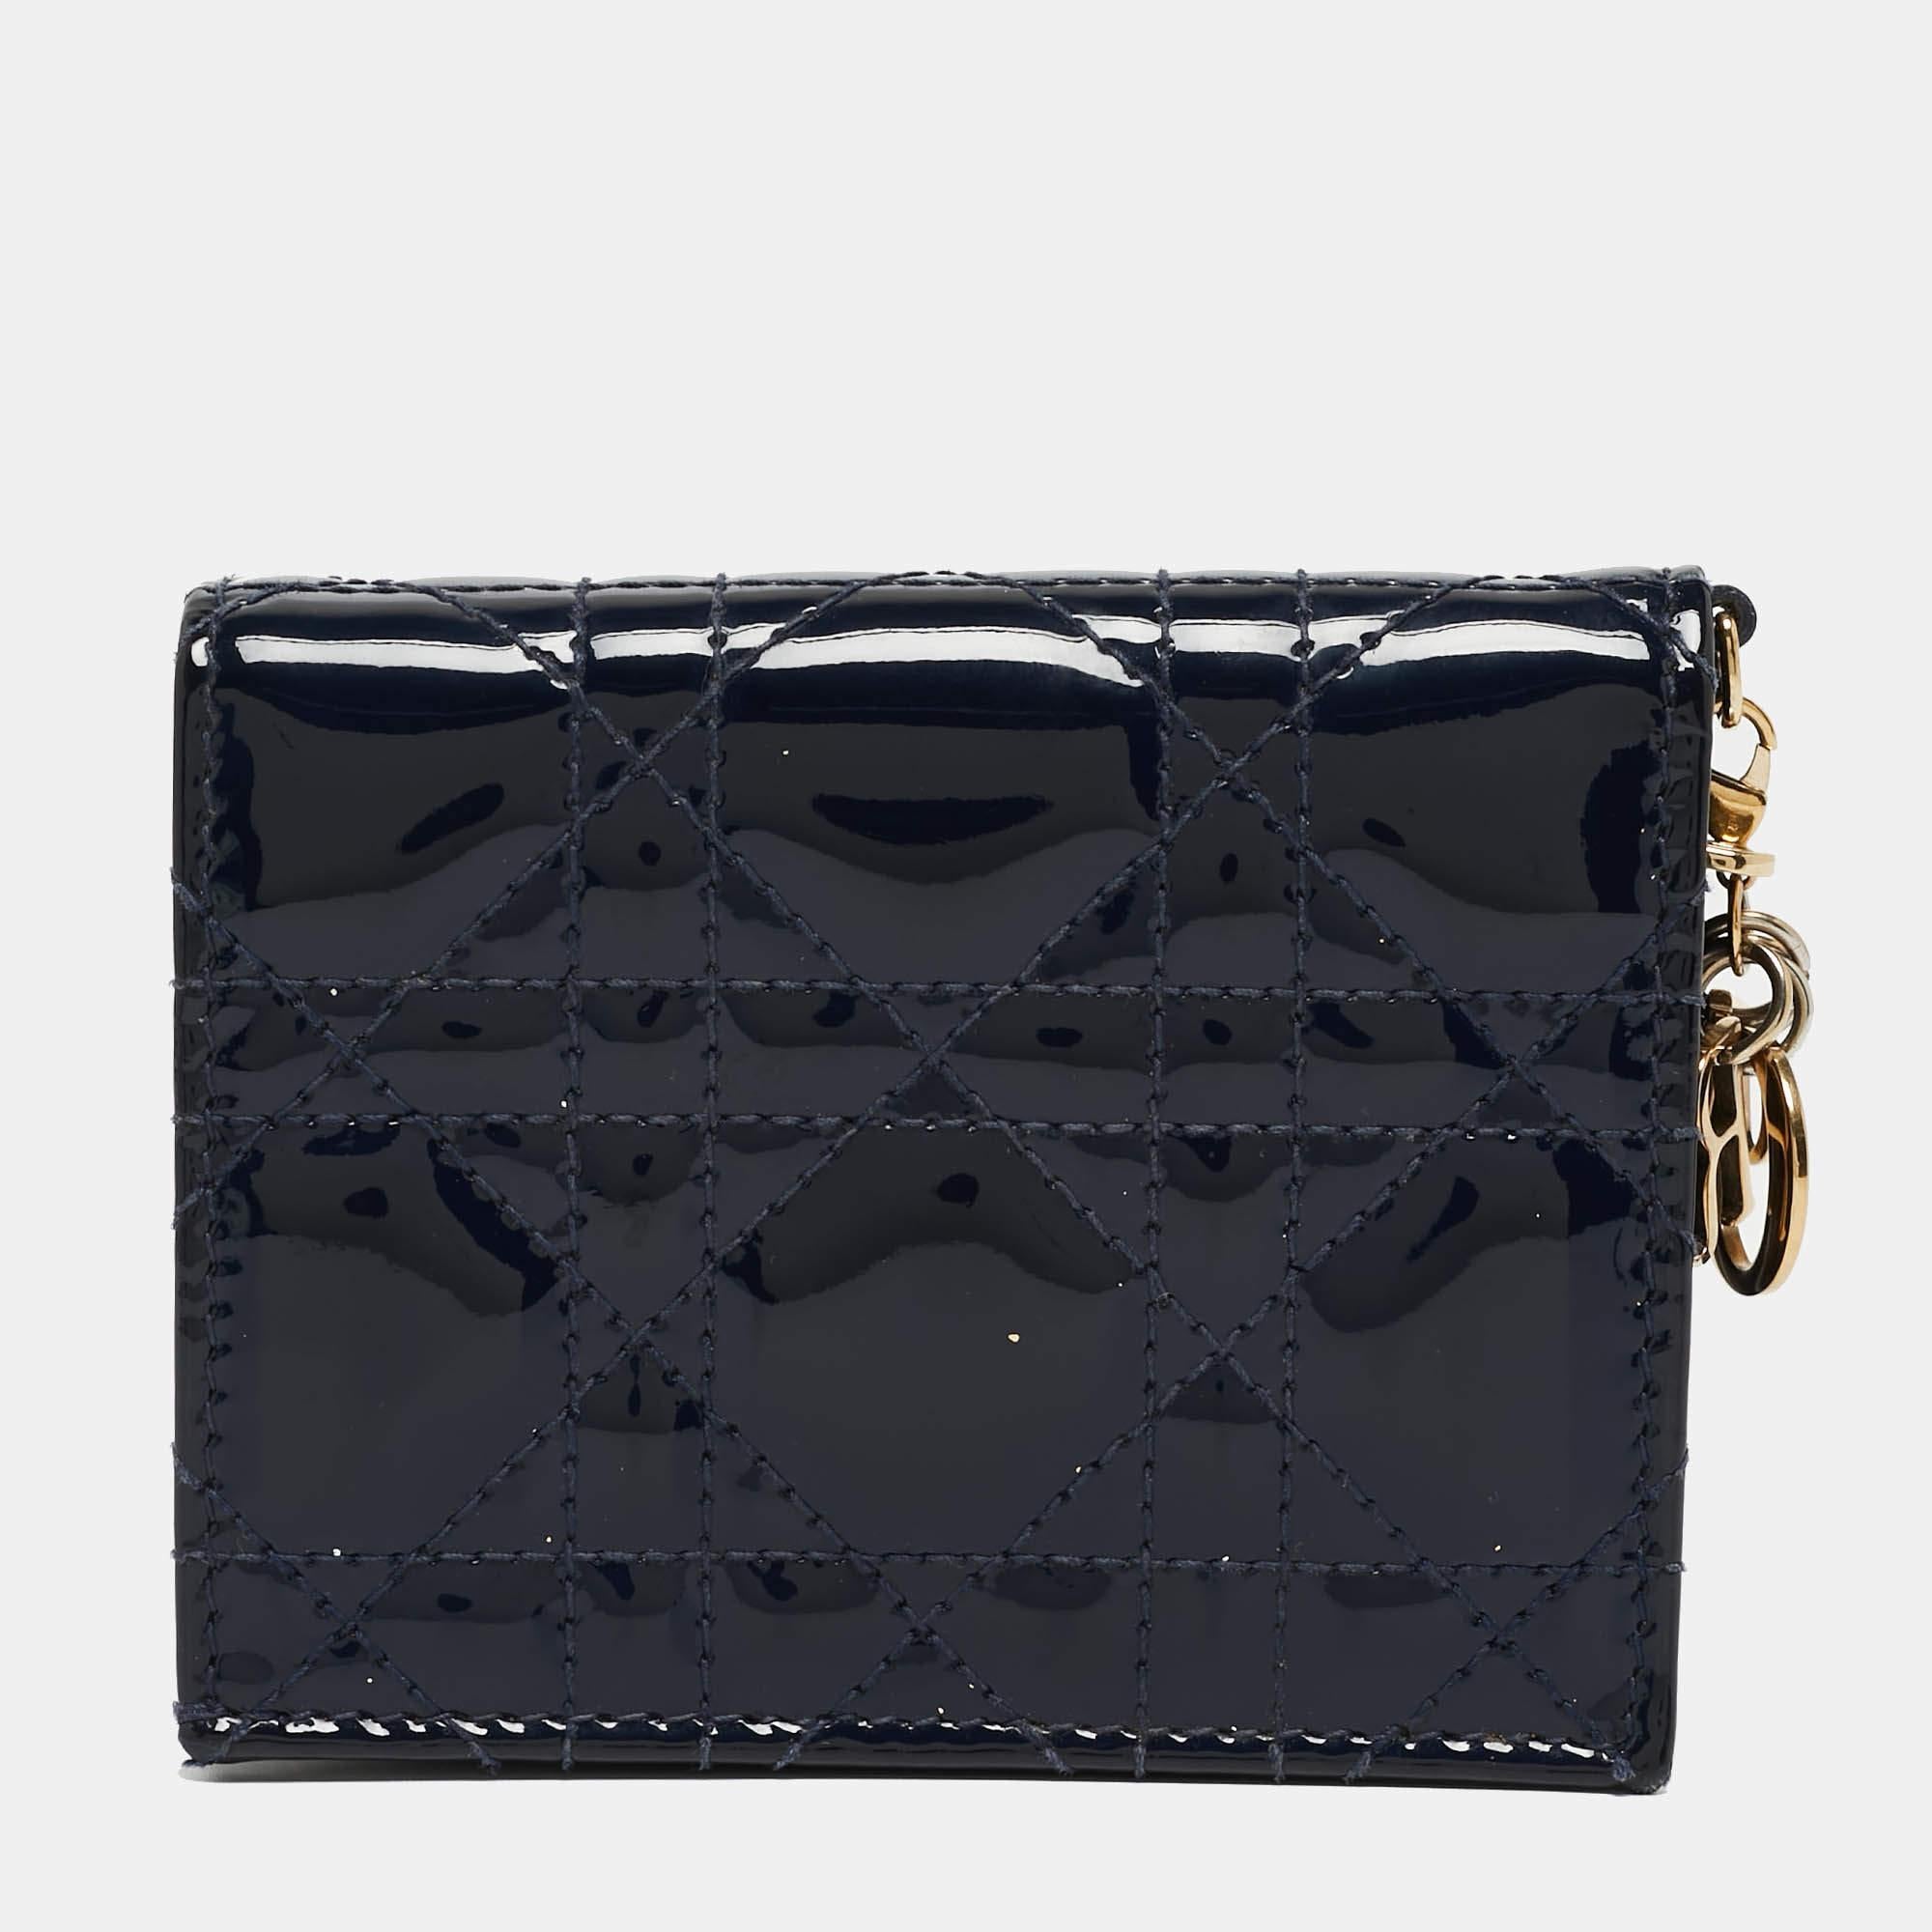 Ce portefeuille Dior de grande classe apporte une touche de luxe et un style immense. Il est parfaitement conçu pour transporter vos cartes et votre argent.

